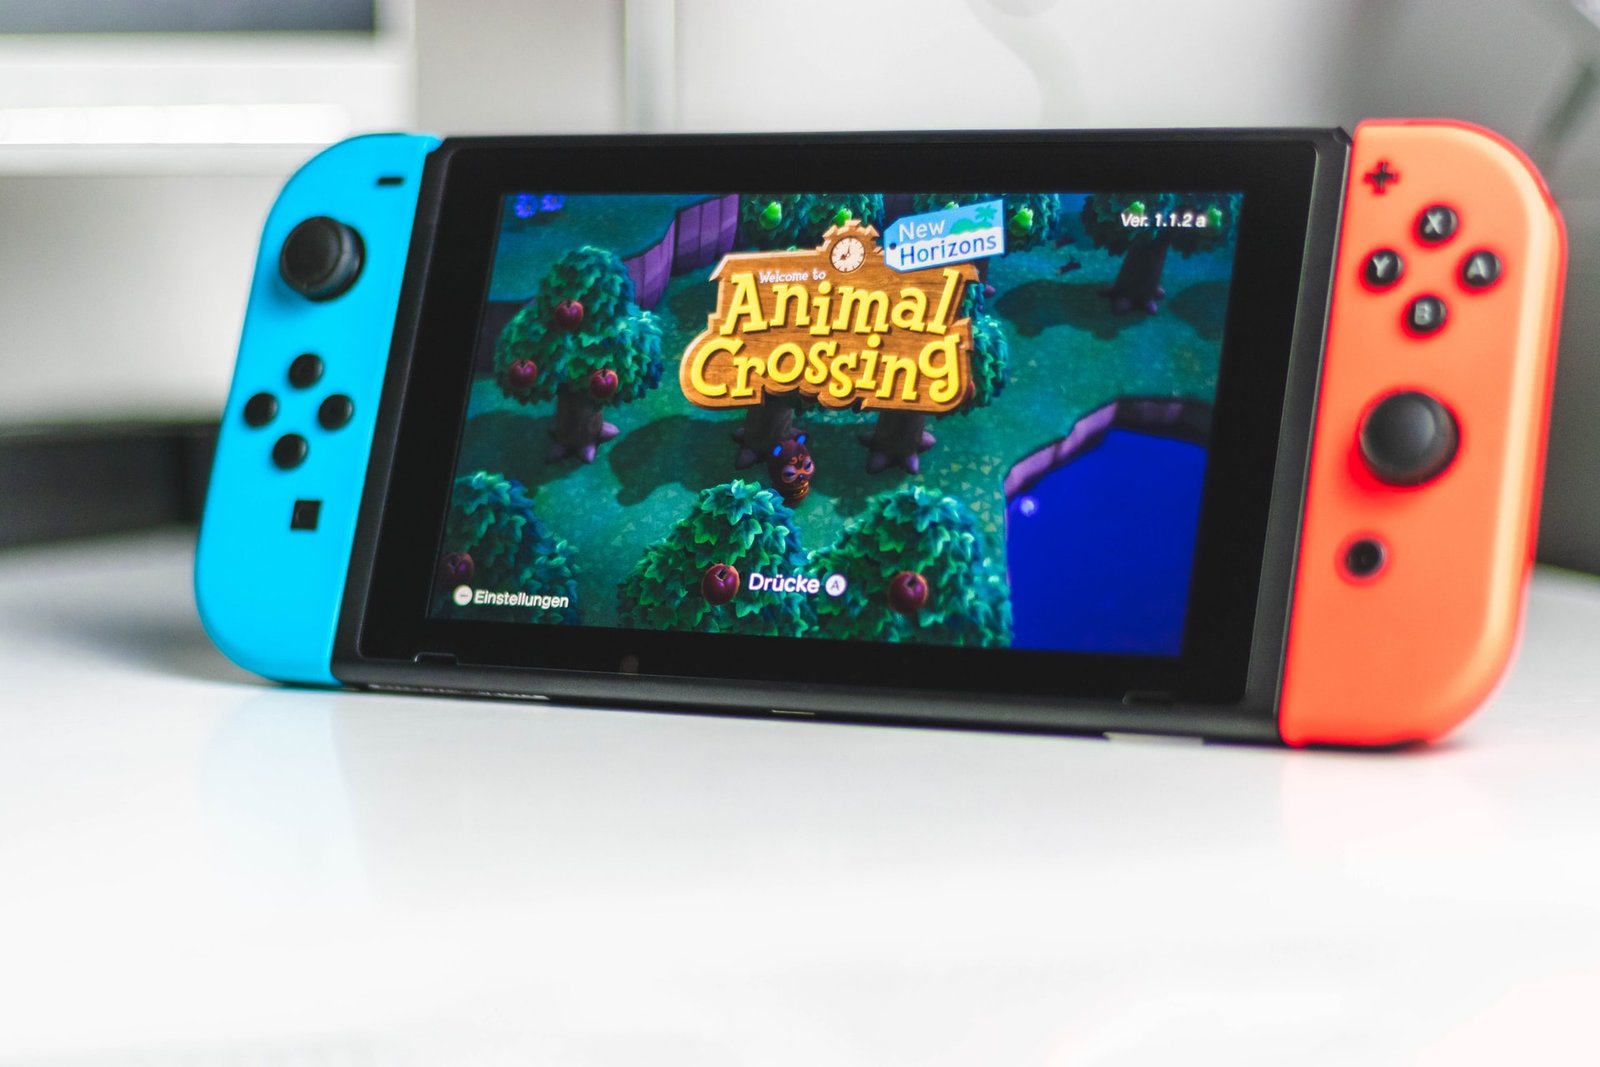 ‘Animal Crossing’ offers digital getaway under lockdown